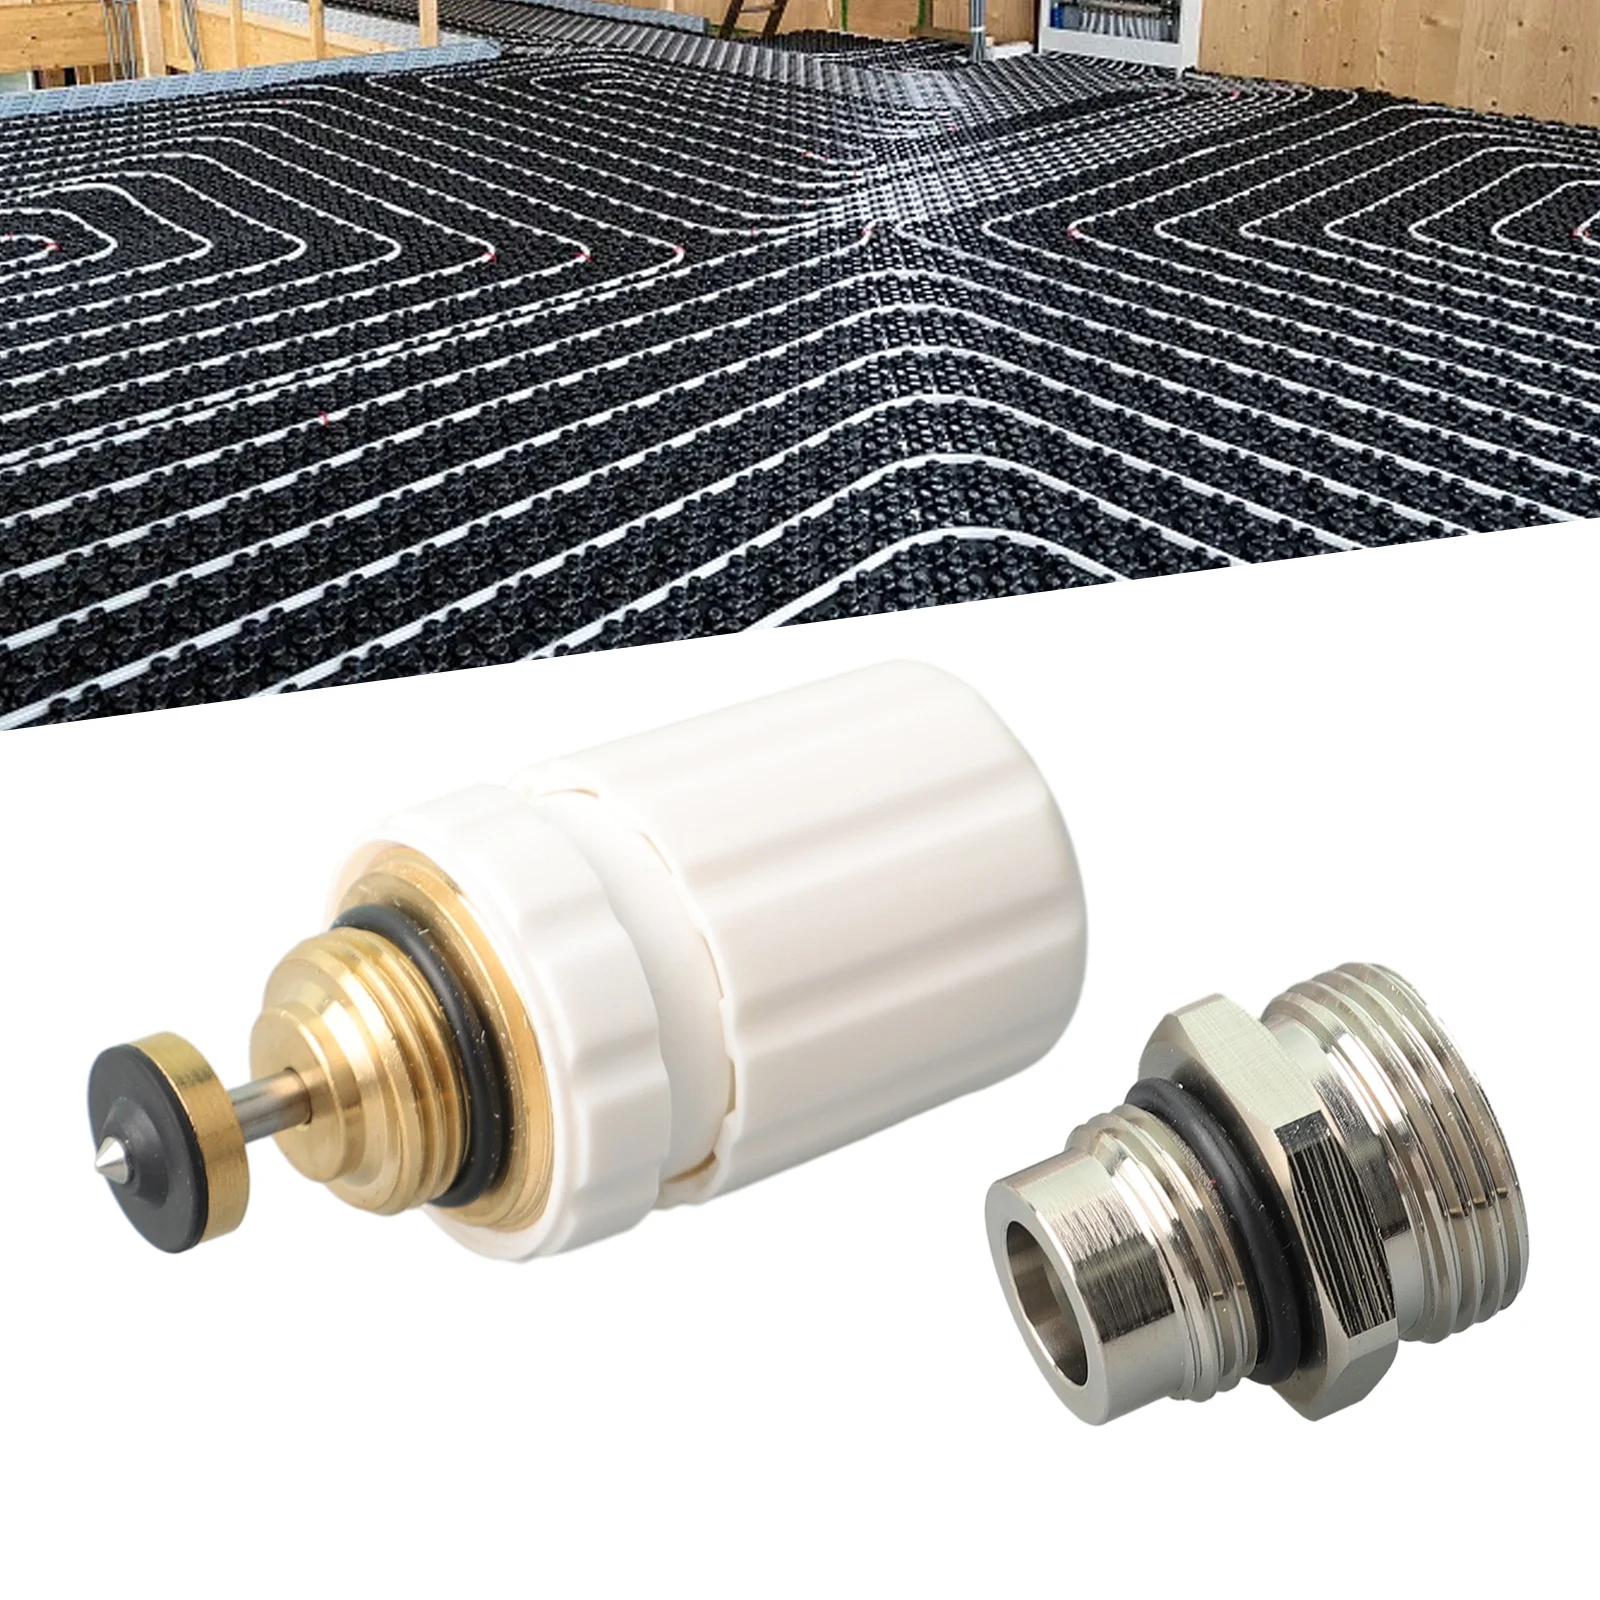 

Home Indoor Valve Insert Brass Distributor G1/2xG3/4 Heating Replacement For Underfloor Heating Spreader Practical